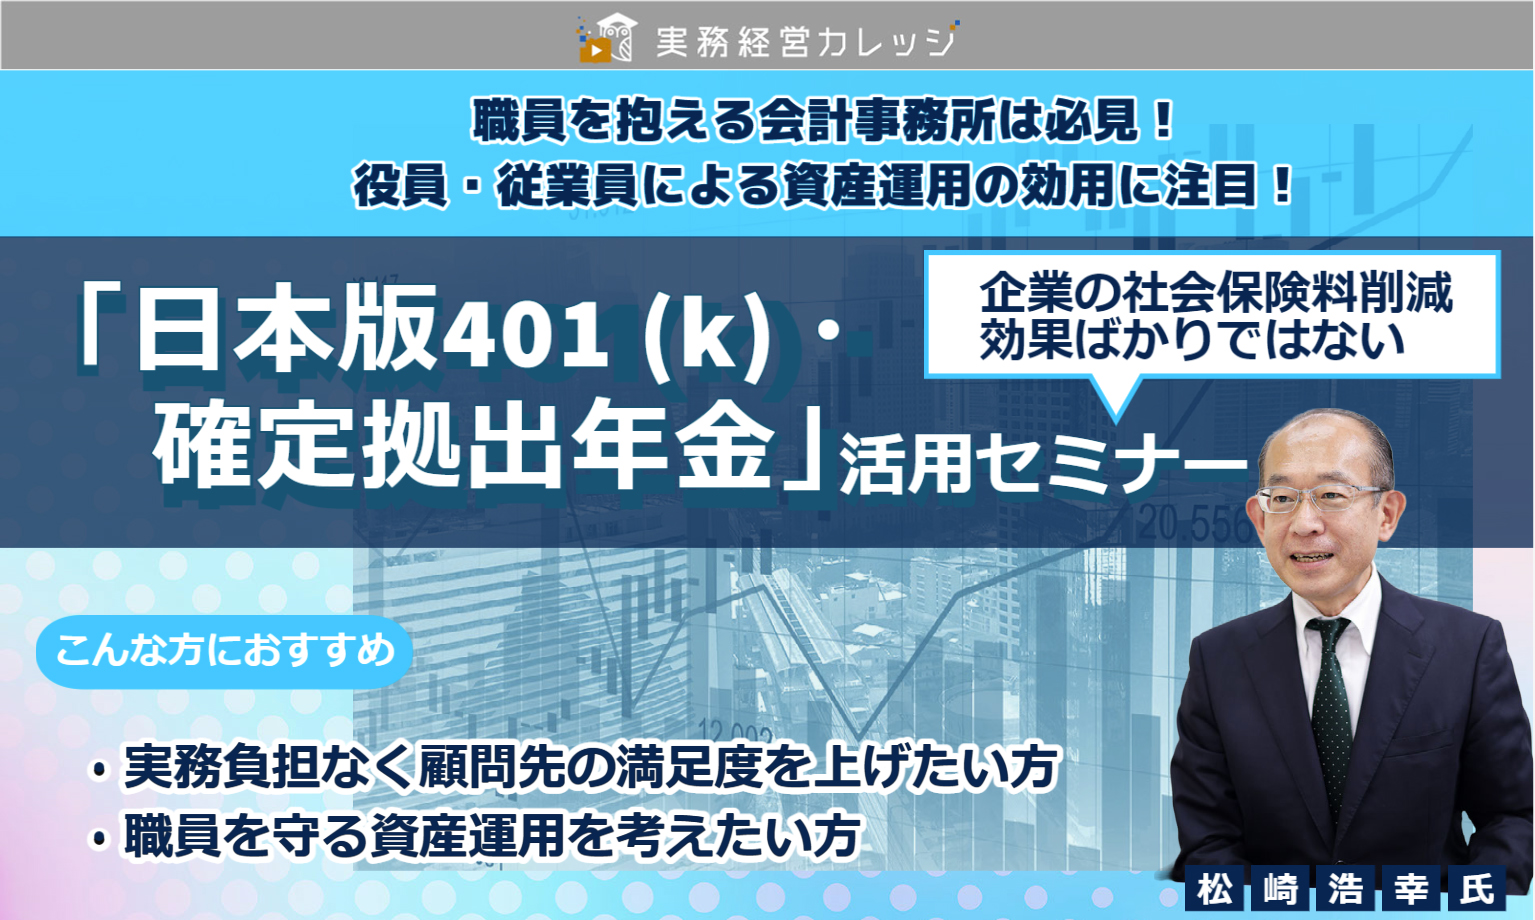 「日本版401(k)・確定拠出年金」活用セミナー画像